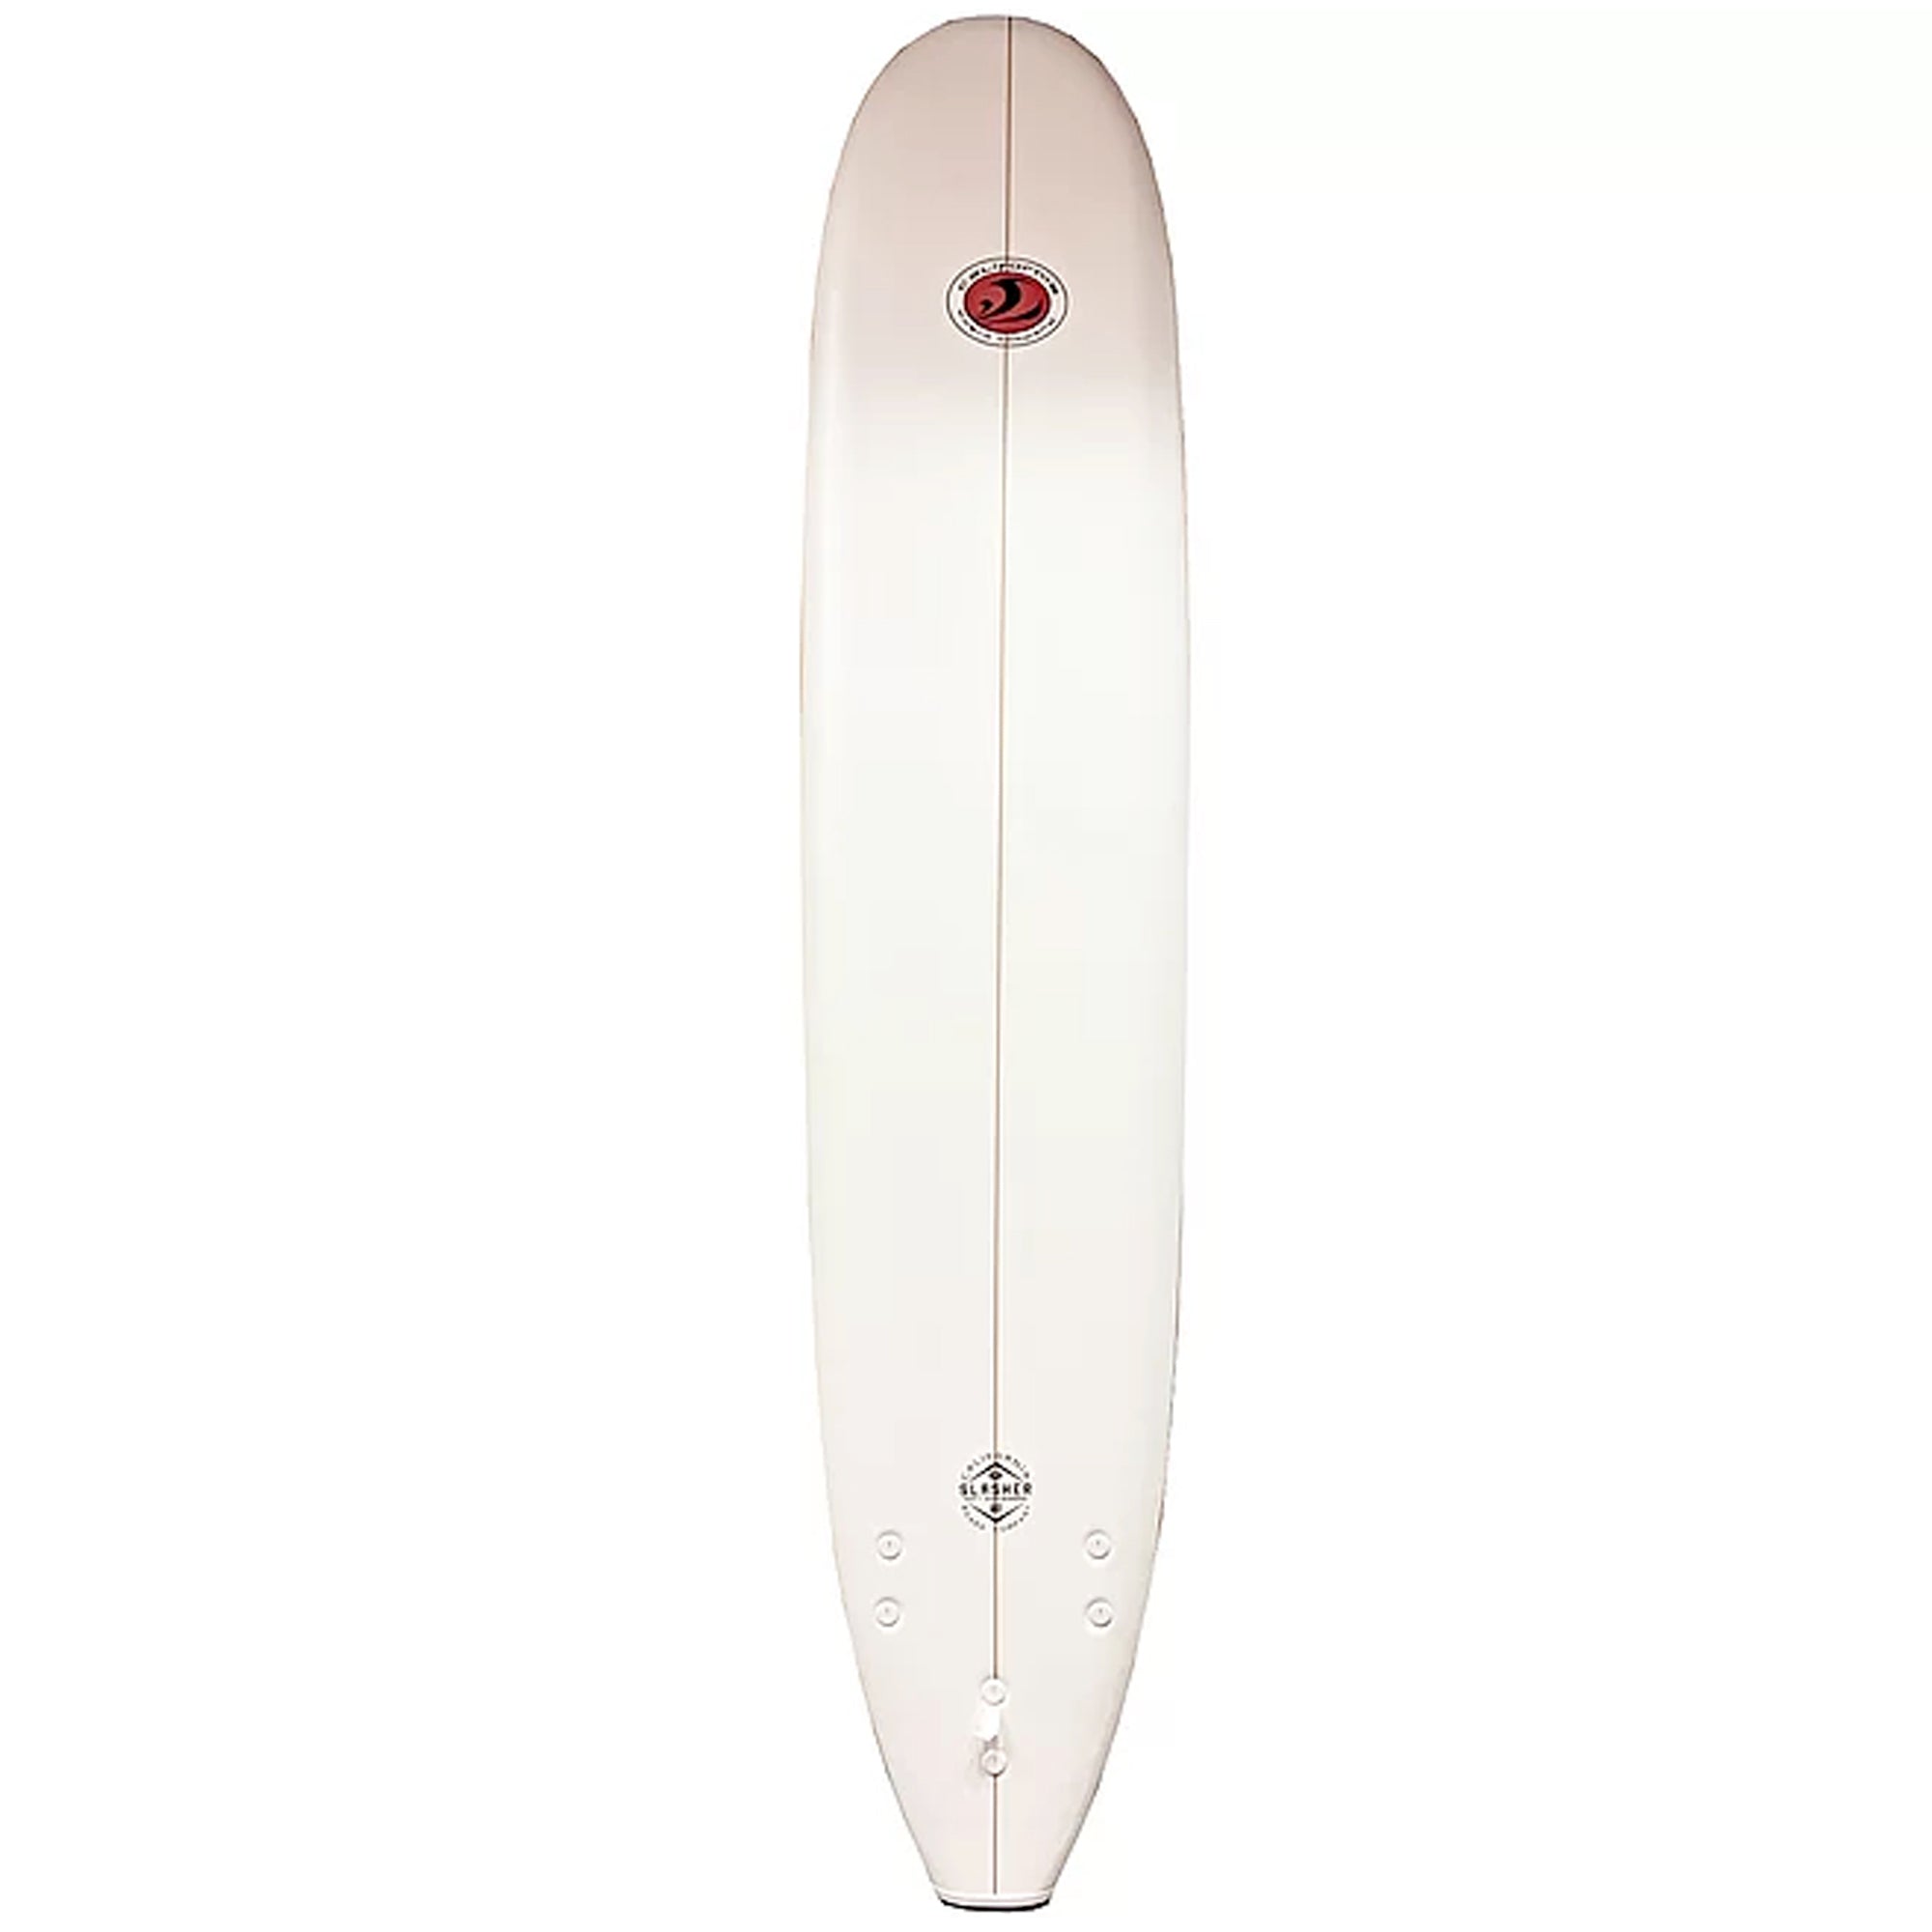 California Board Co. Slasher 9'0 Soft Surfboard